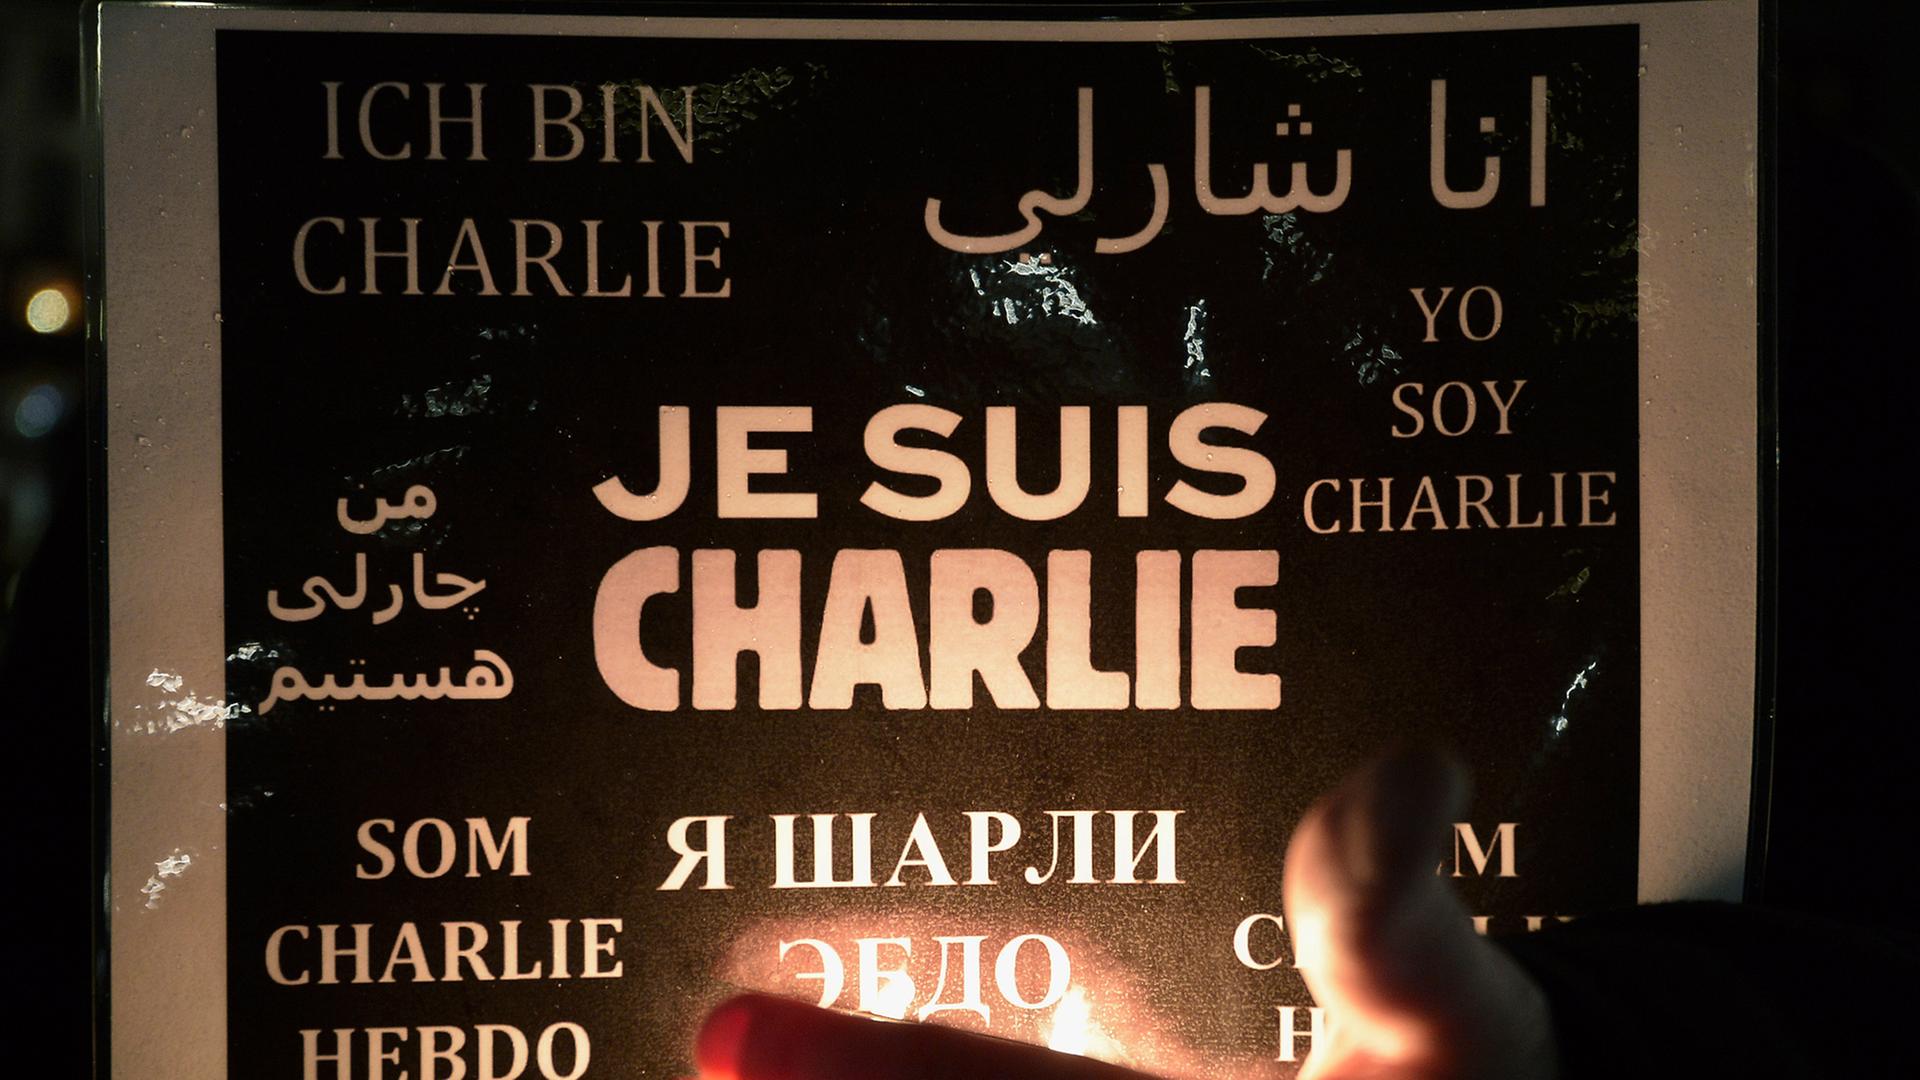 Eine Frau hält ein Poster mit einer Solidaritätsbekundung für "Charlie Hebdo" hoch